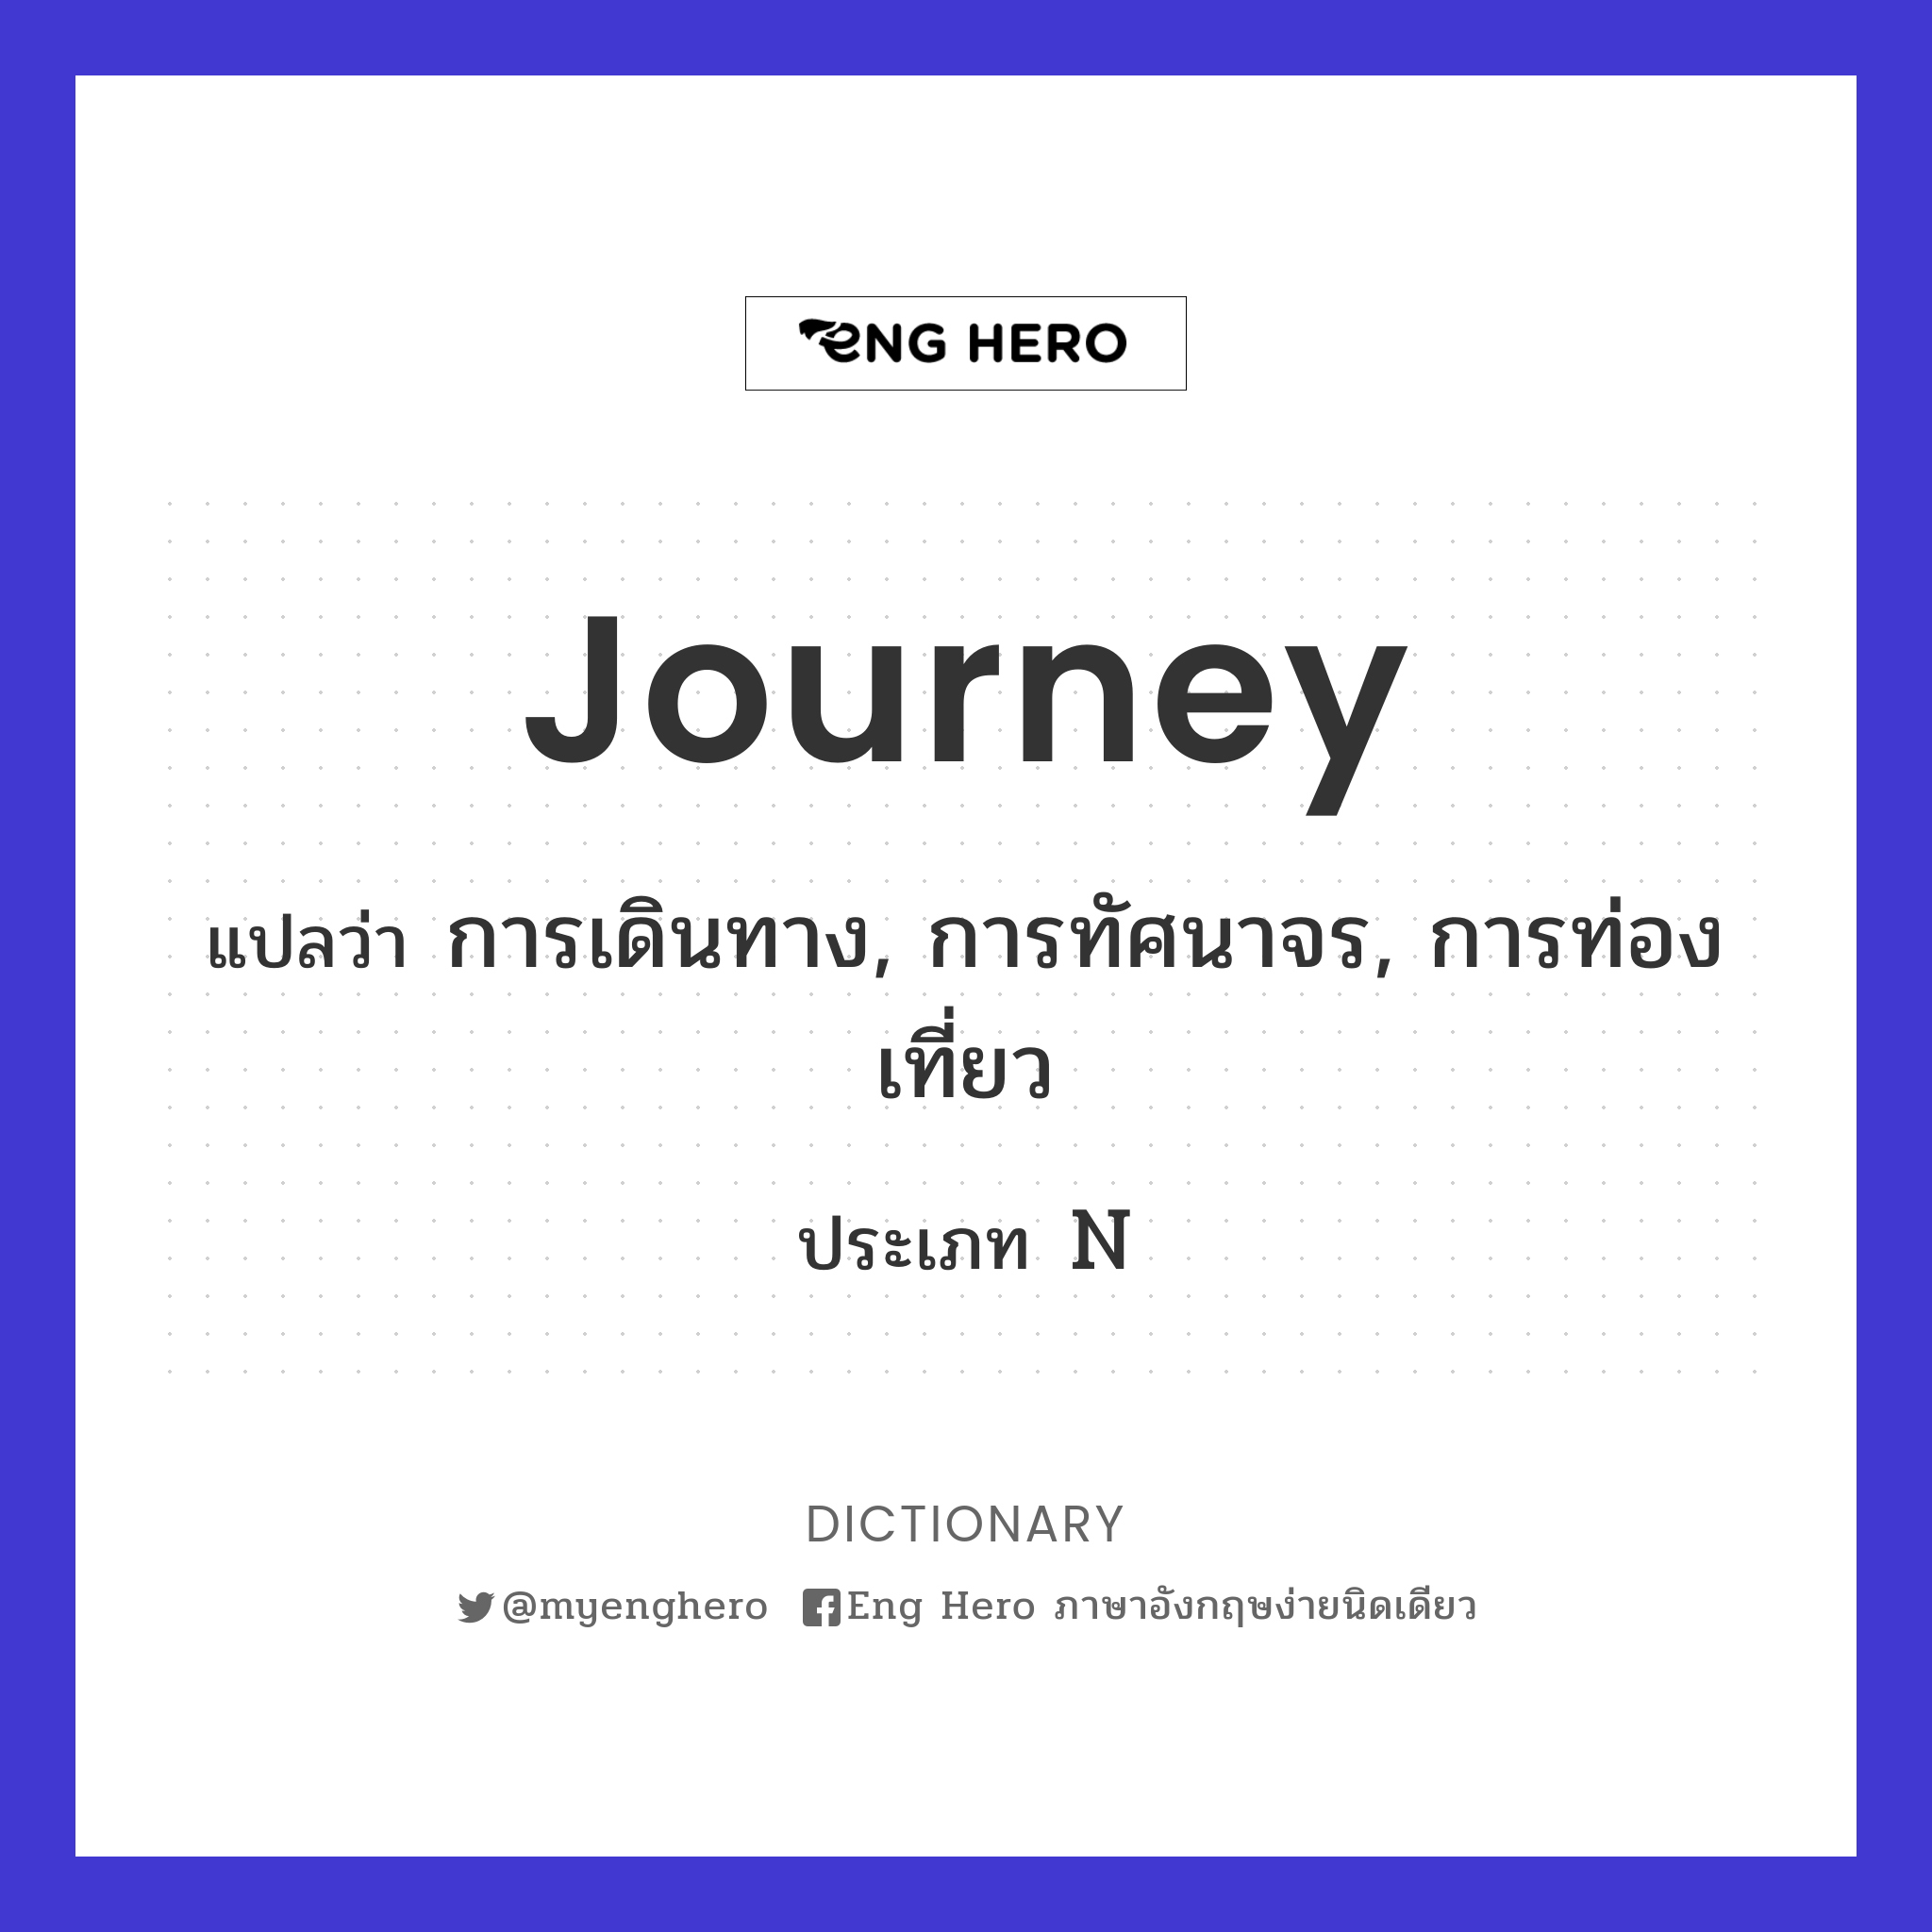 journey